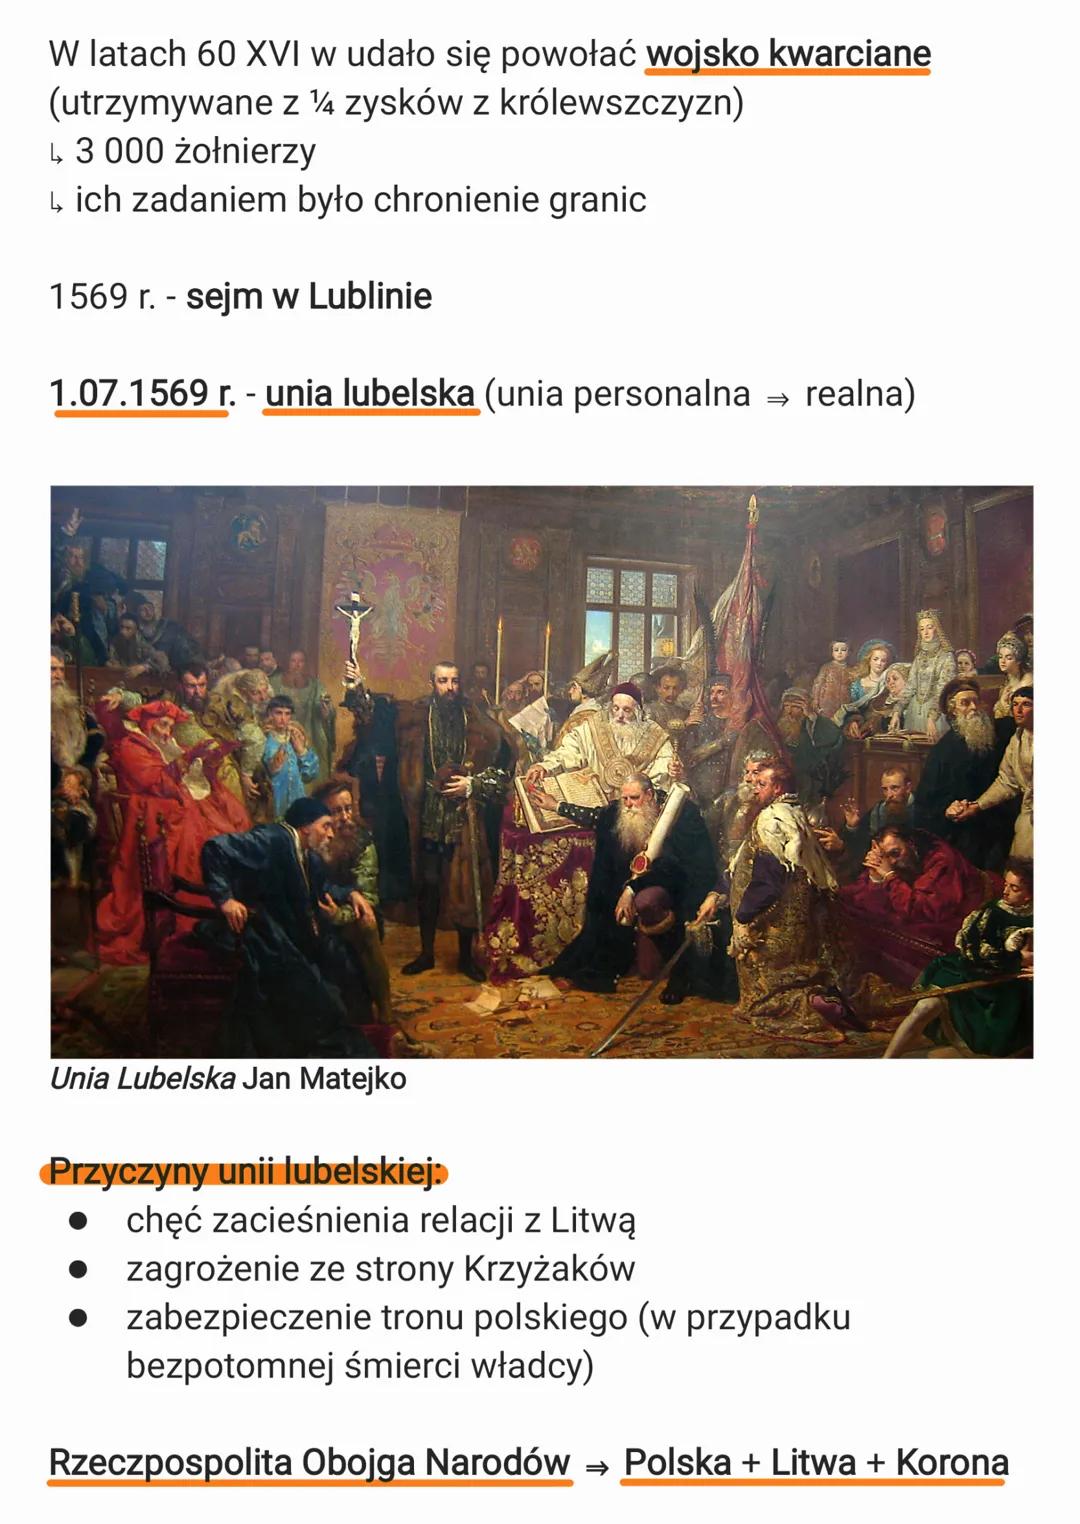 Rzeczpospolita w XVI stuleciu
Temat: Rzeczpospolita i państwa ościenne
1515 r. - układ dynastyczny Jagiellonów i Habsburgów
Przyczyny układu